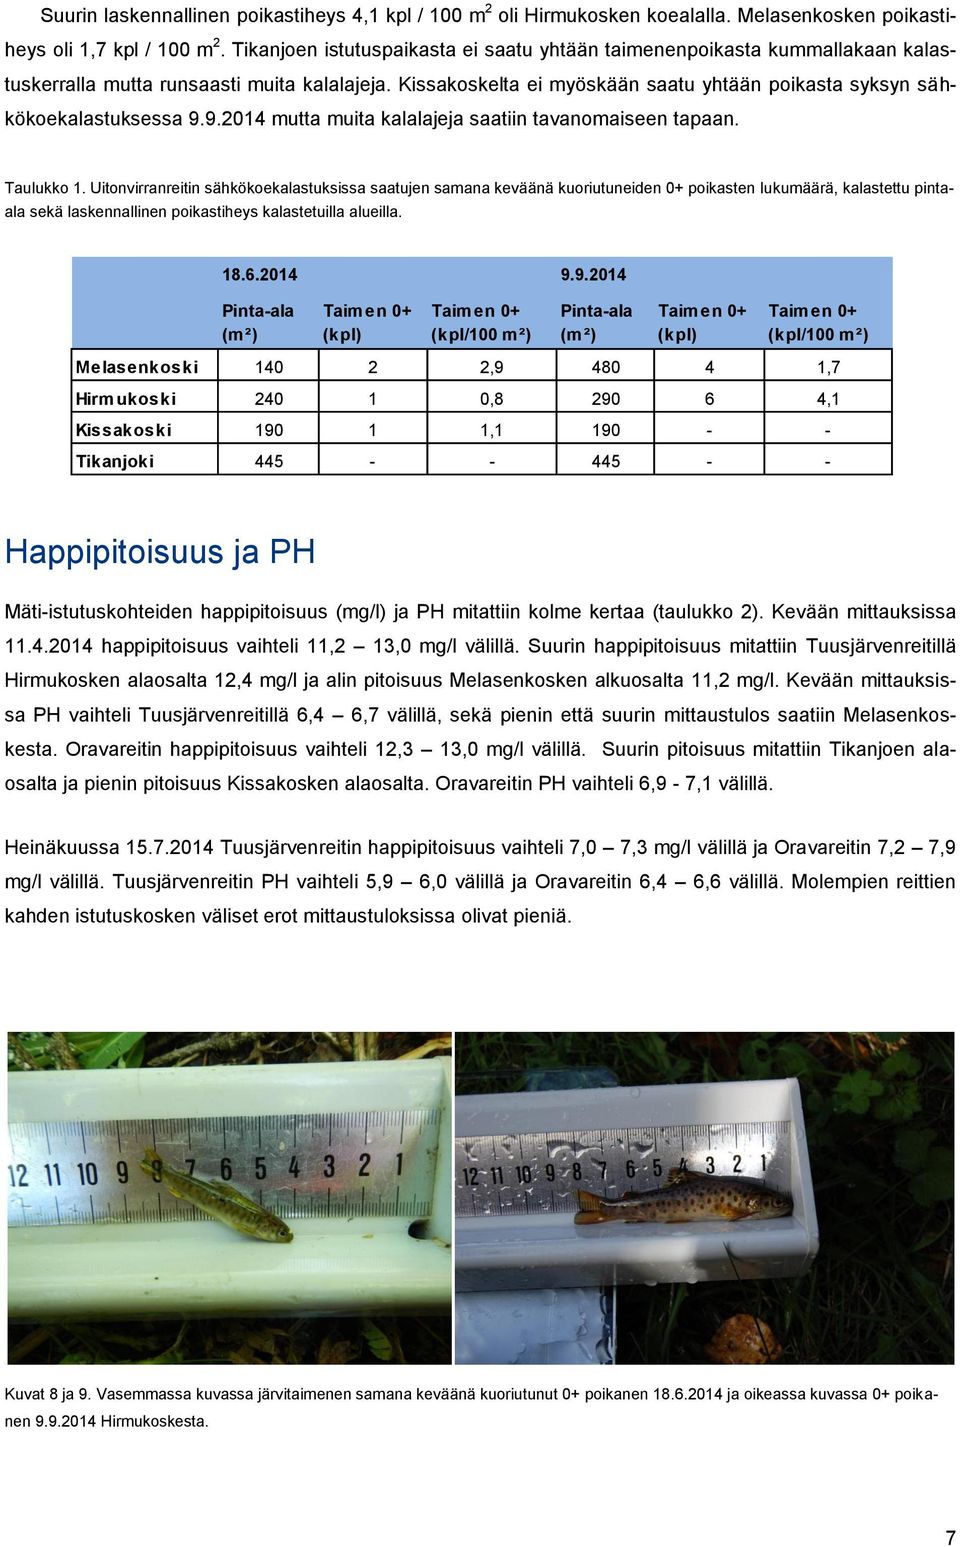 Kissakoskelta ei myöskään saatu yhtään poikasta syksyn sähkökoekalastuksessa 9.9.2014 mutta muita kalalajeja saatiin tavanomaiseen tapaan. Taulukko 1.